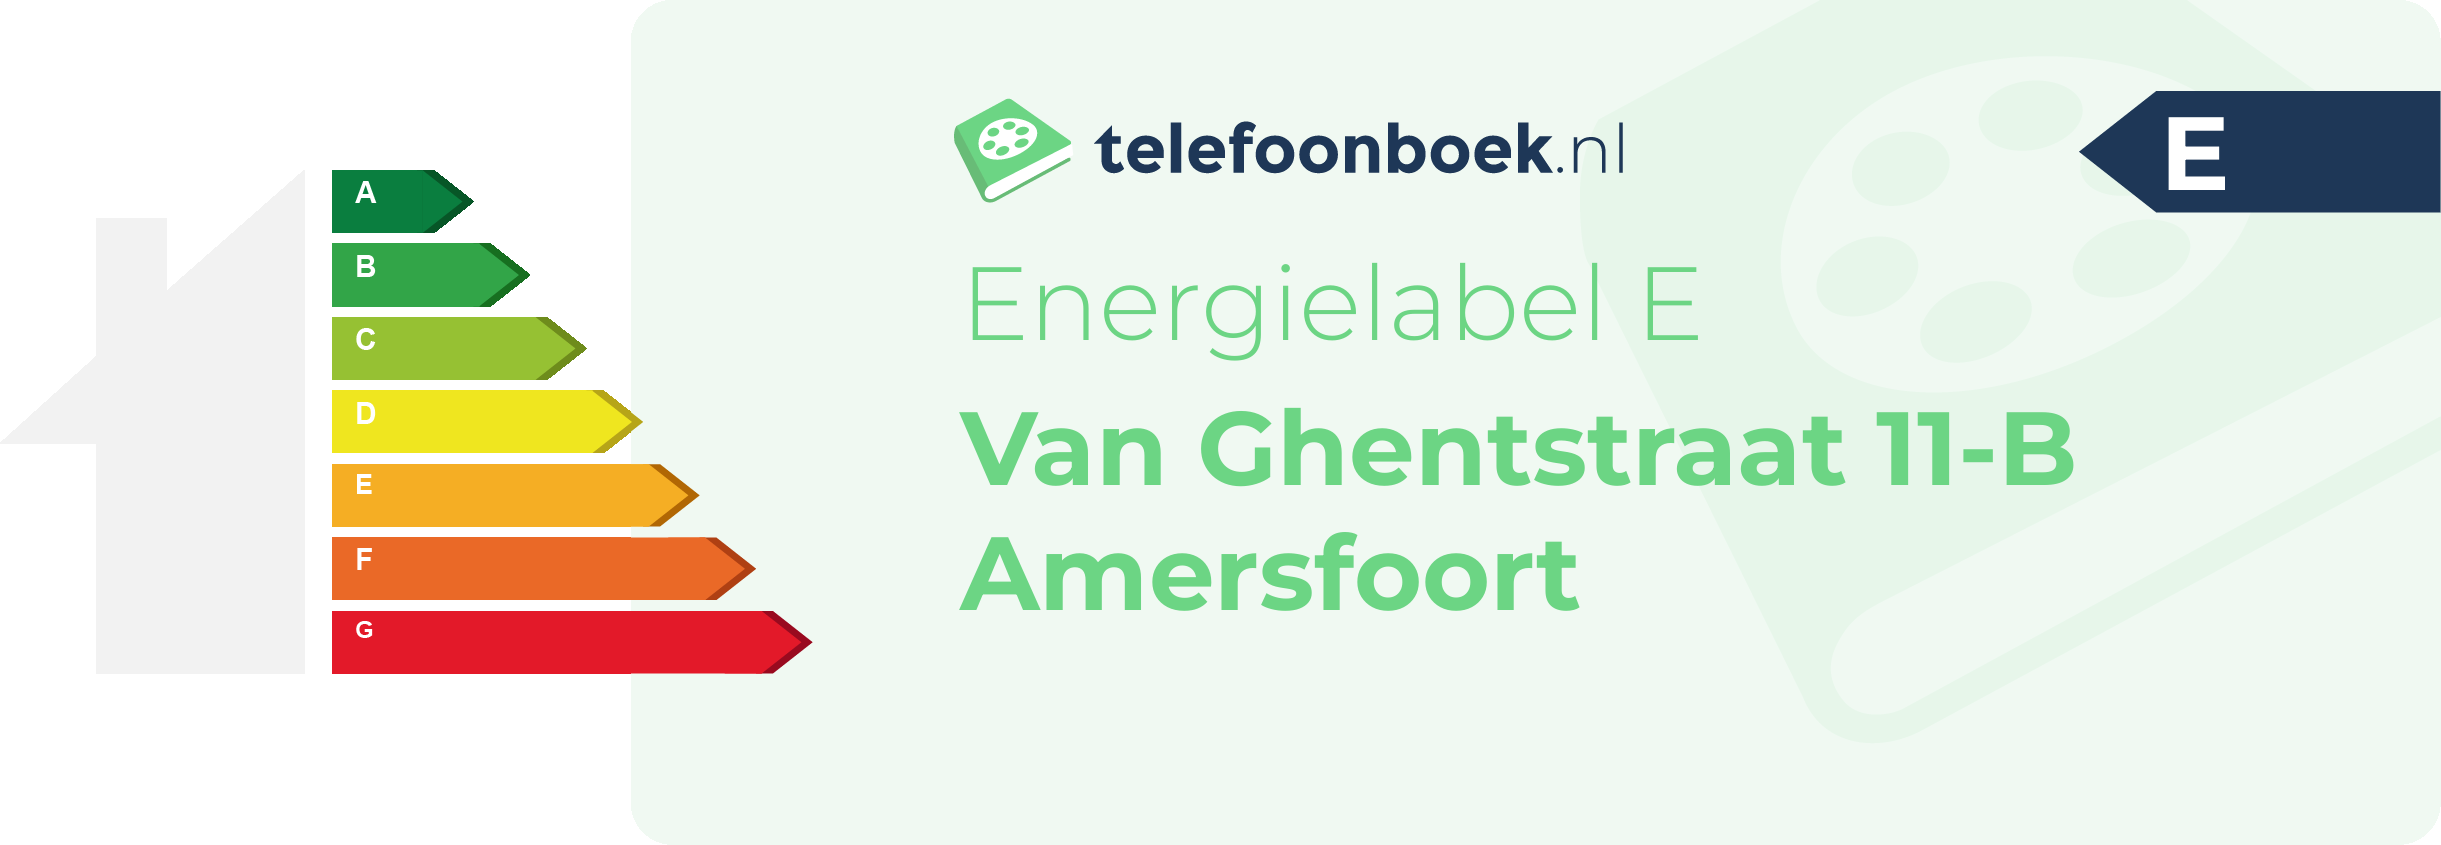 Energielabel Van Ghentstraat 11-B Amersfoort